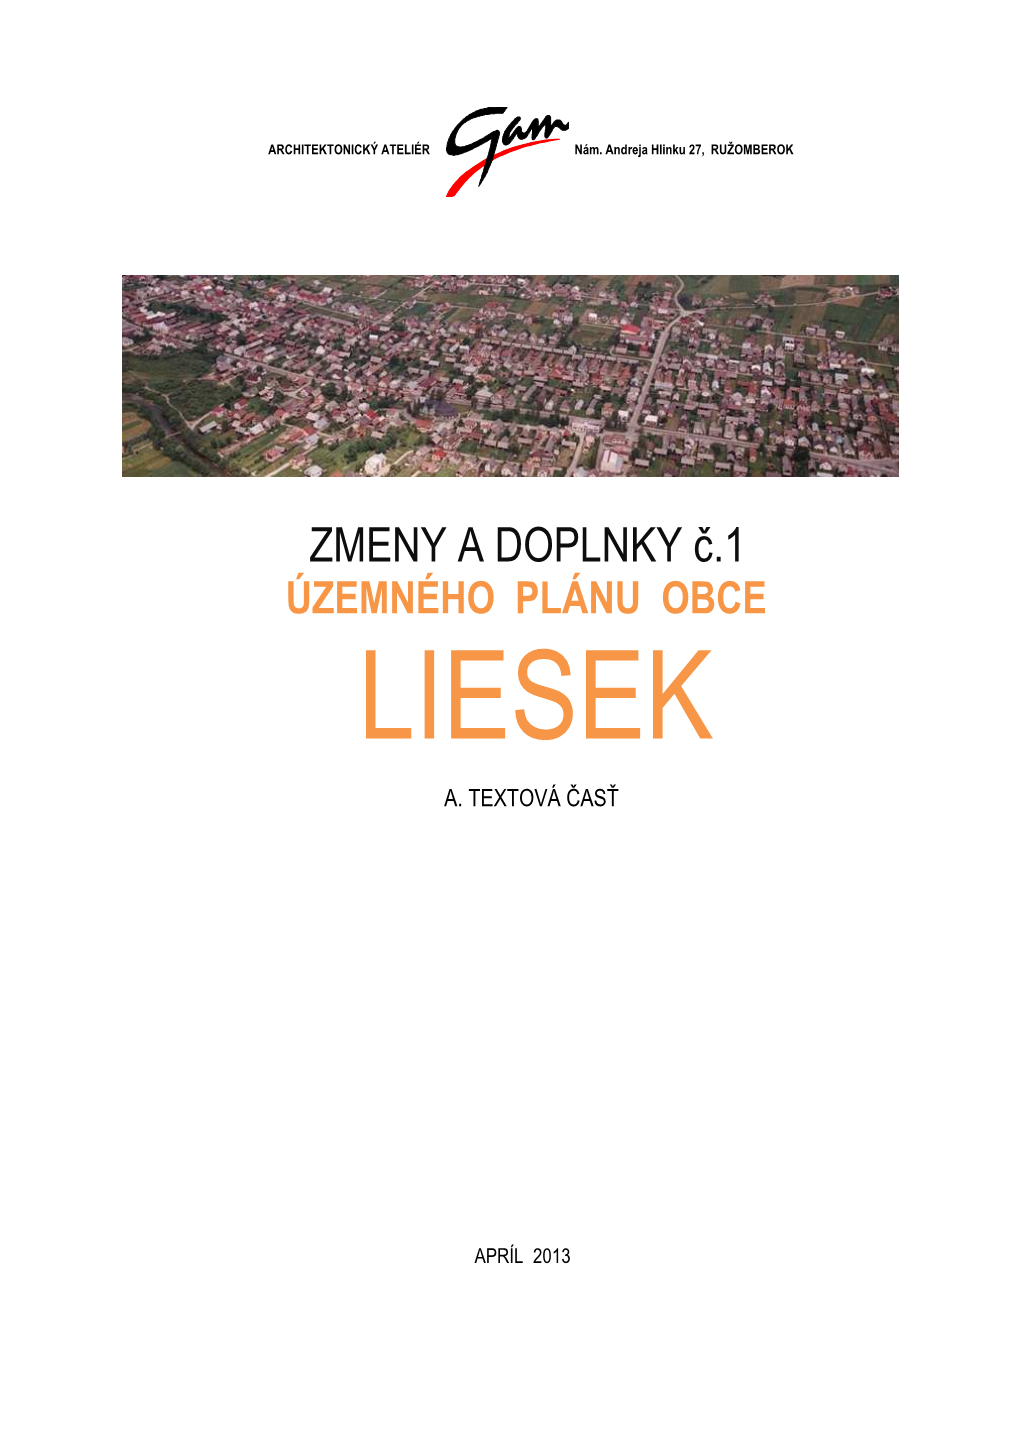 Text Čistopis Z+Dč.1 Liesek